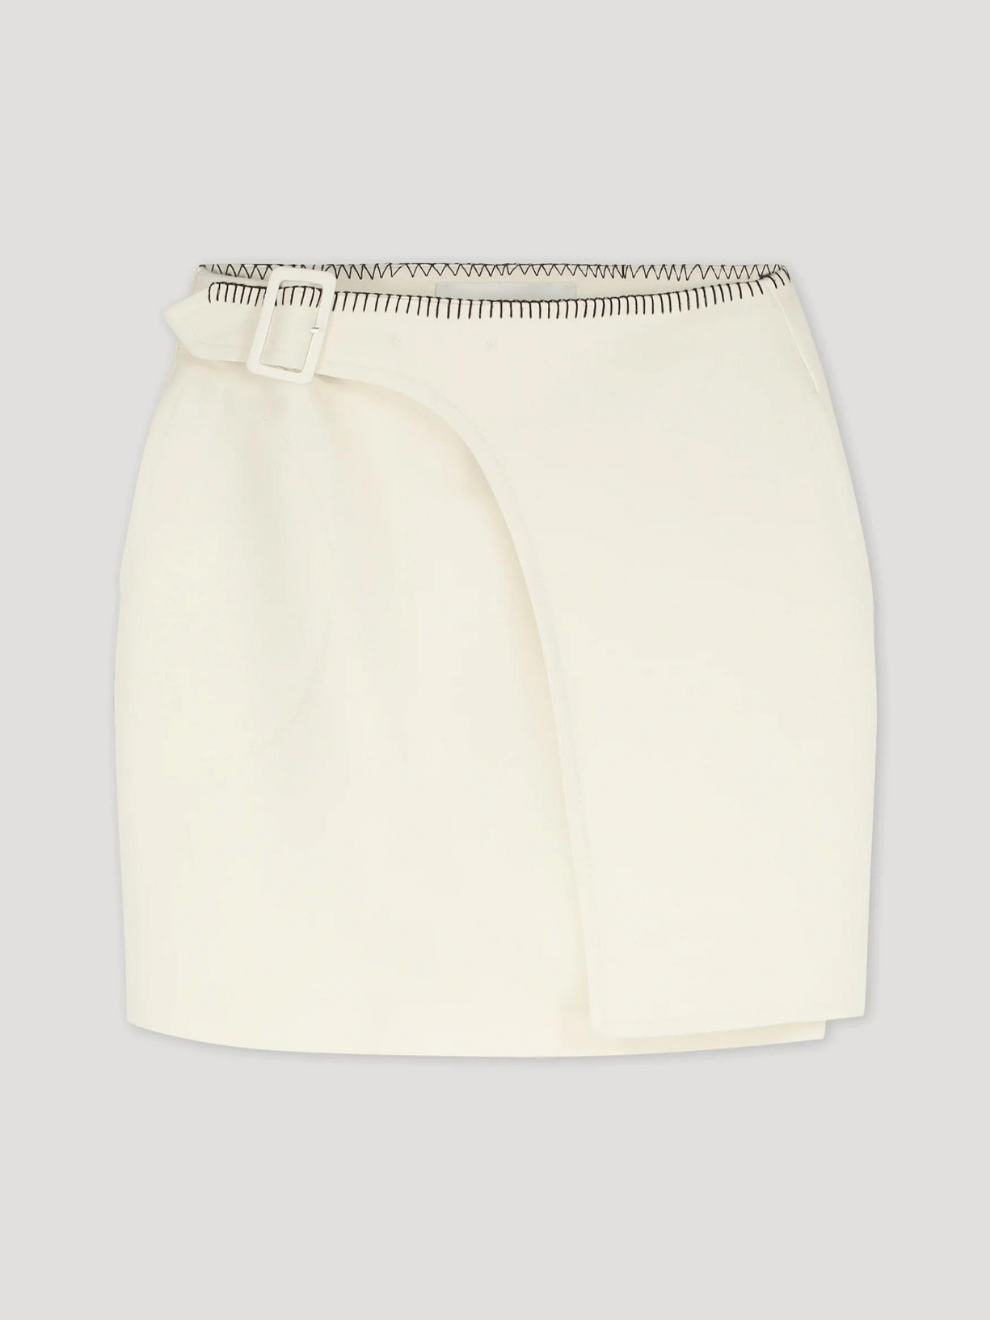 Short Resort Skirt in Ivory